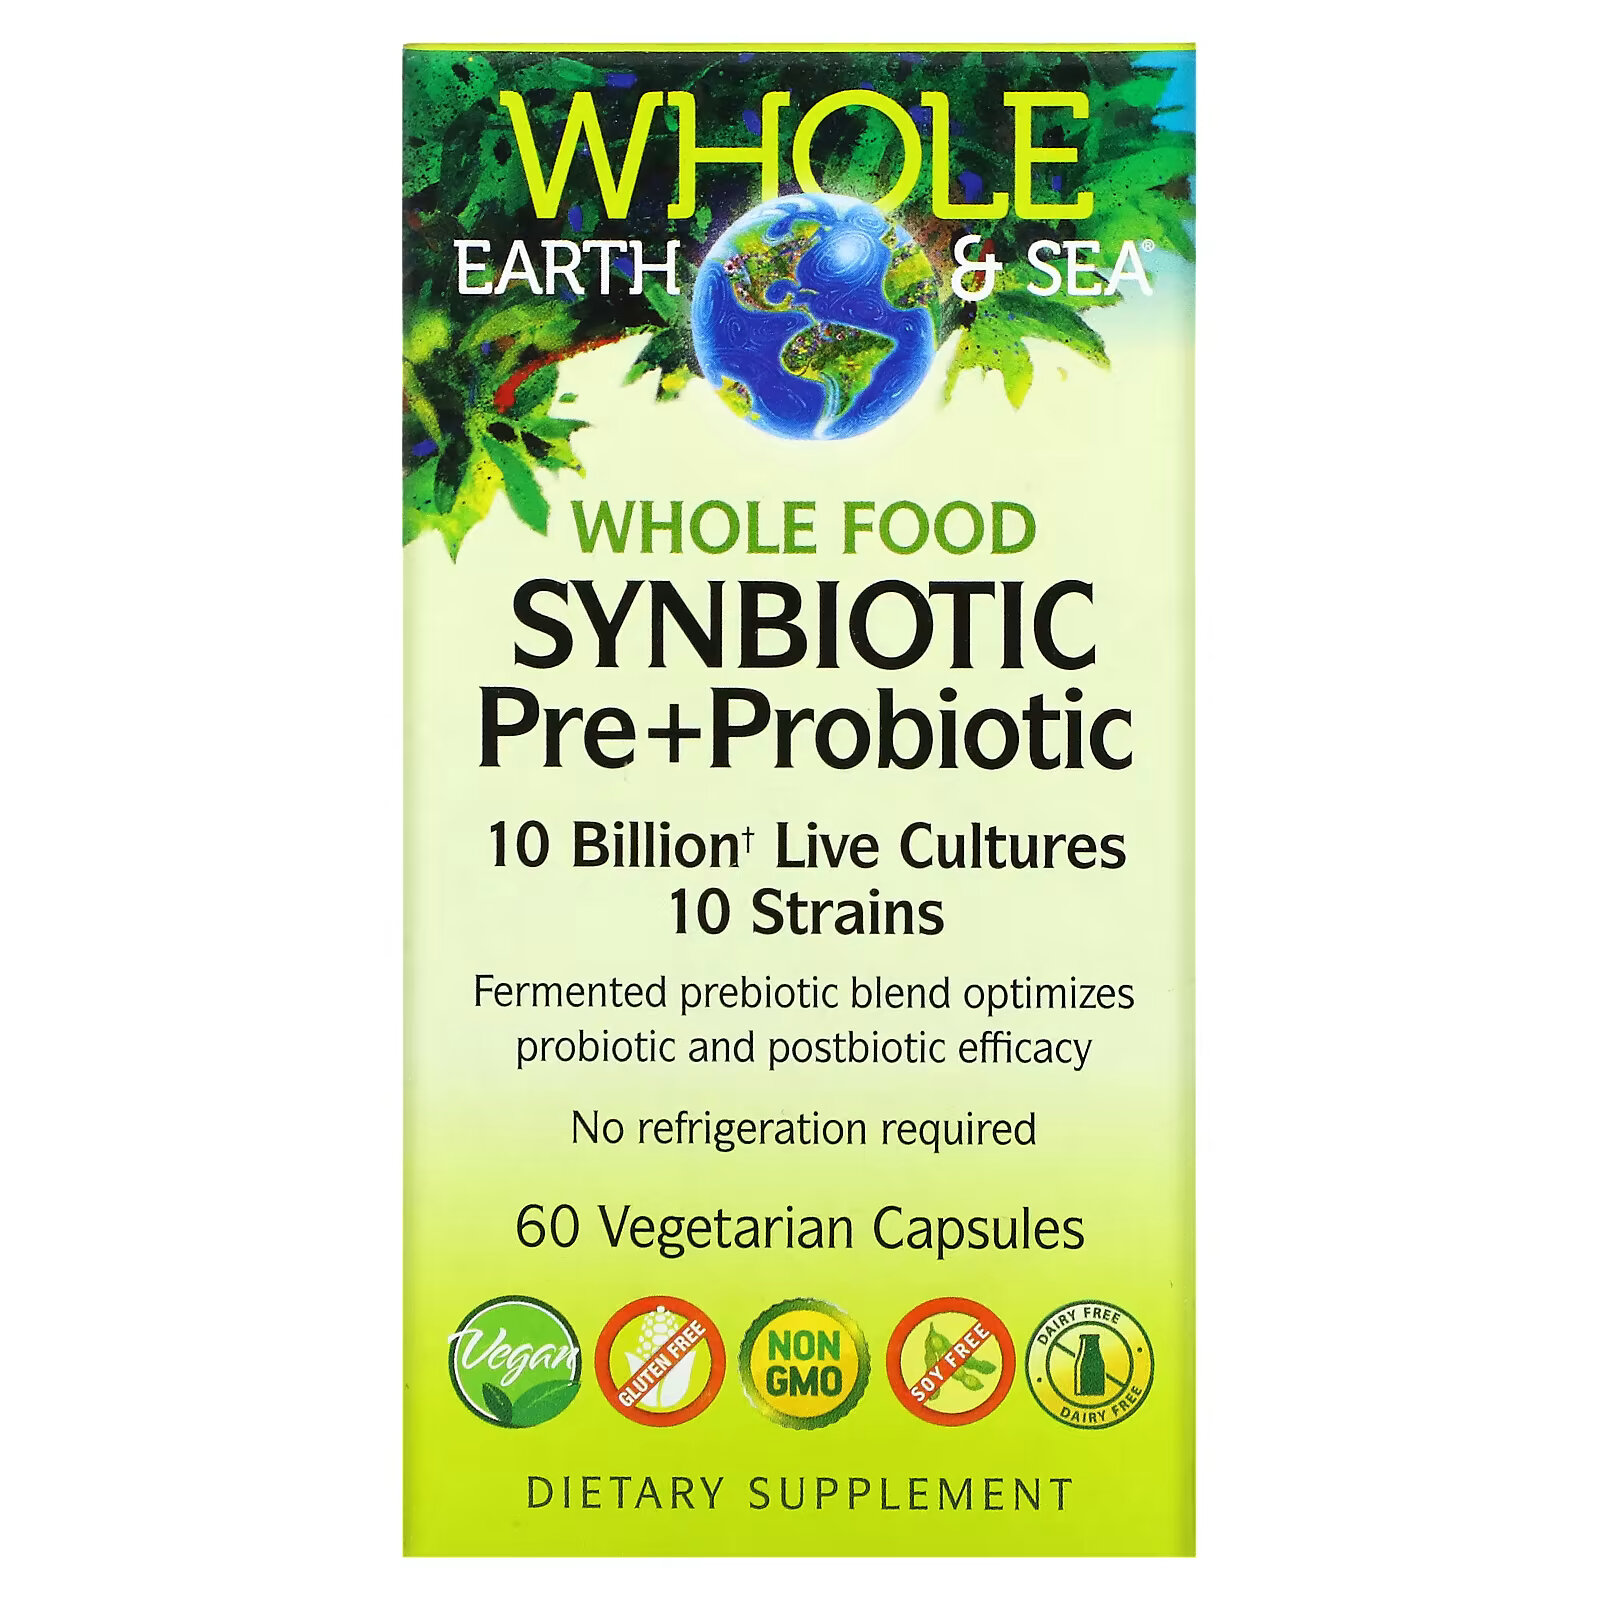 jamieson natural sources пробиотик 10 миллиардов активных клеток 60 вегетарианских капсул Цельнопищевой синбиотик пробиотик Natural Factors, 60 вегетарианских капсул